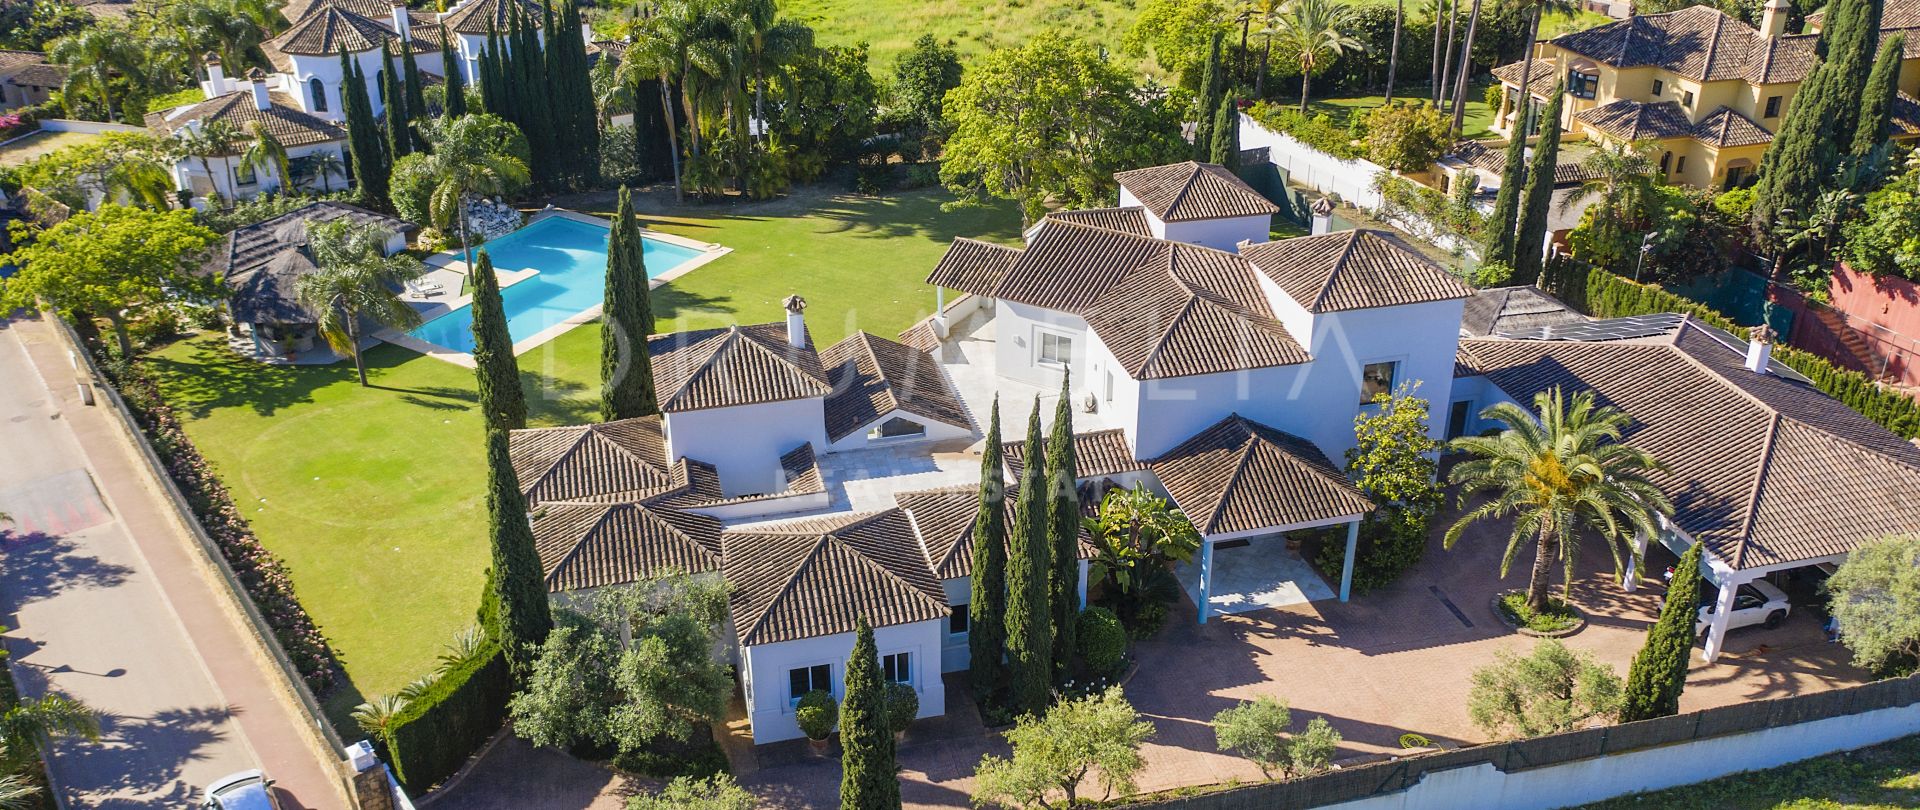 Fantastisk luksuriøs middelhavsvilla med stor tomt i eliten Guadalmina Baja, San Pedro, Marbella.